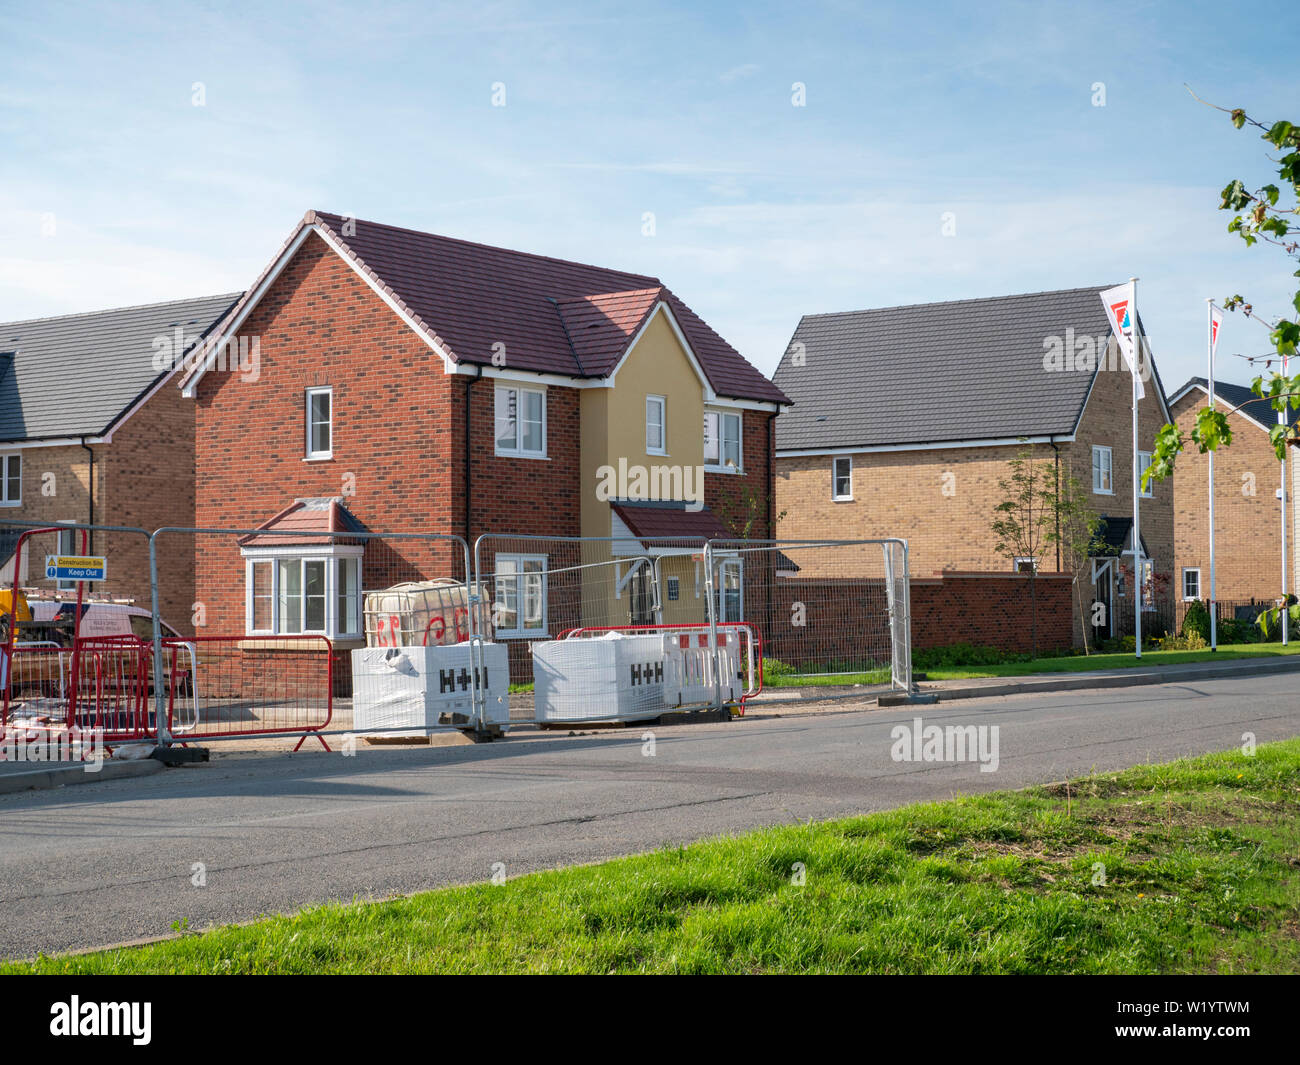 Nuove case in un quartiere residenziale e la proprietà di sviluppo da parte di costruttori Kier nel villaggio di Willingham Cambridgeshire Regno Unito Foto Stock